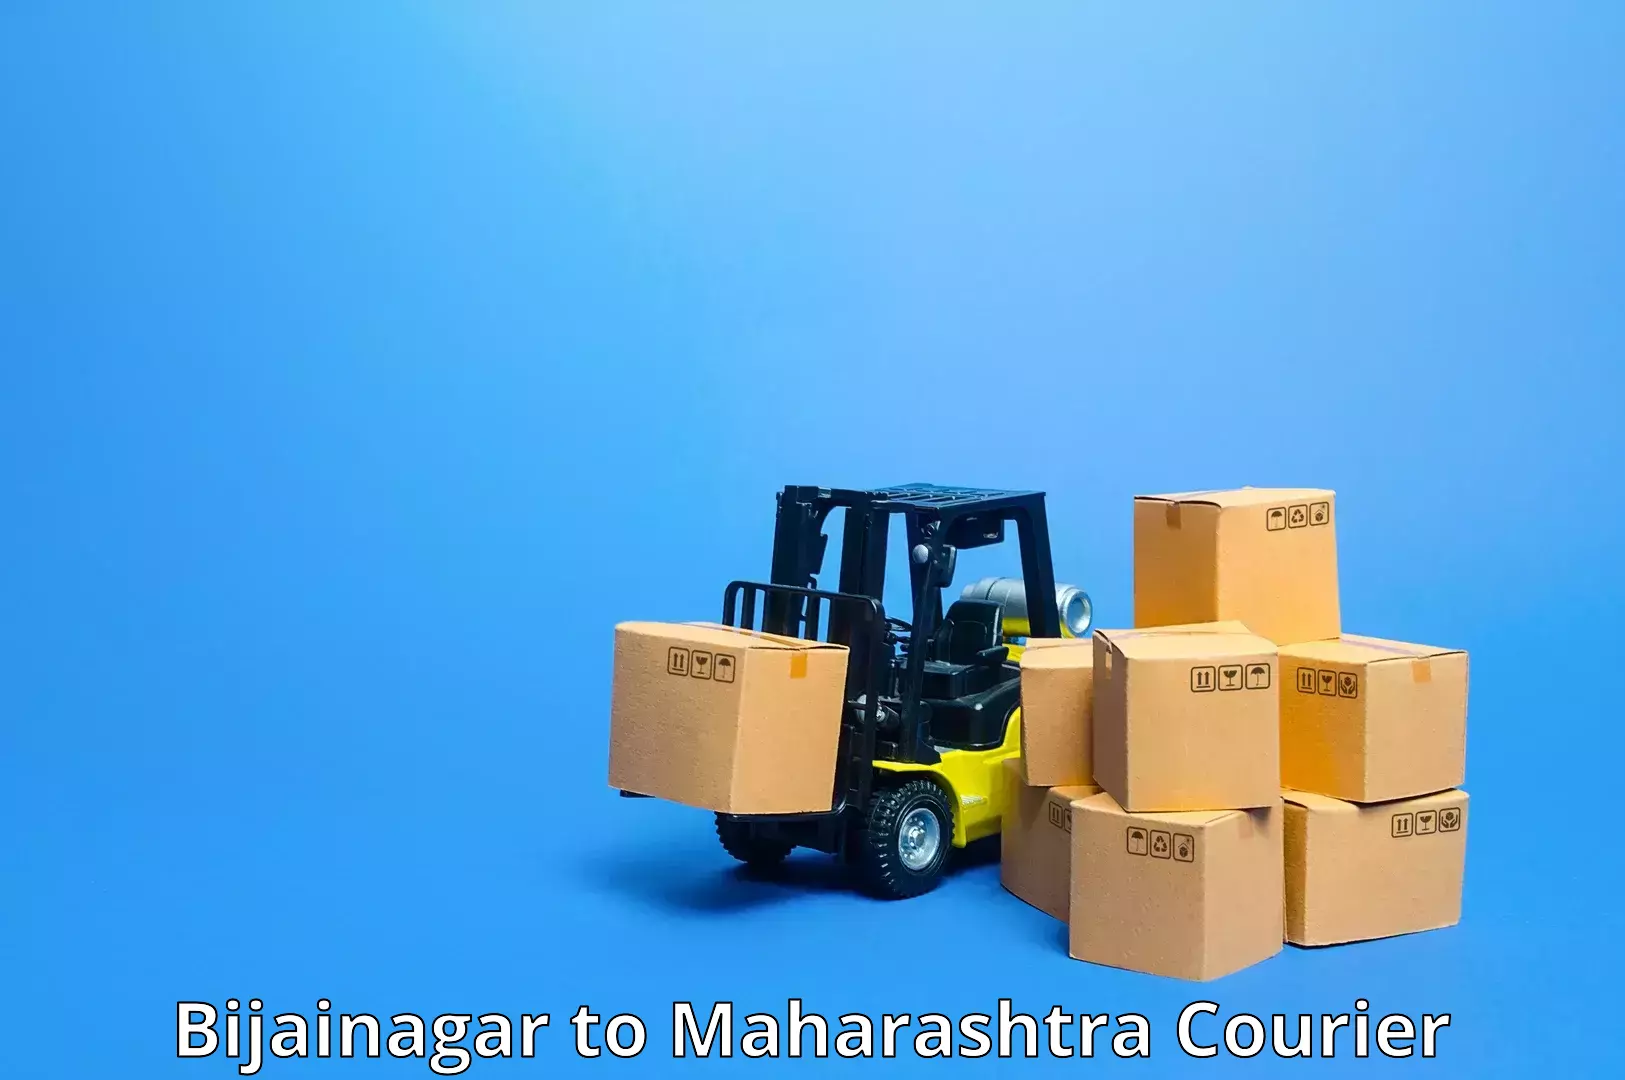 Global freight services Bijainagar to Ulhasnagar